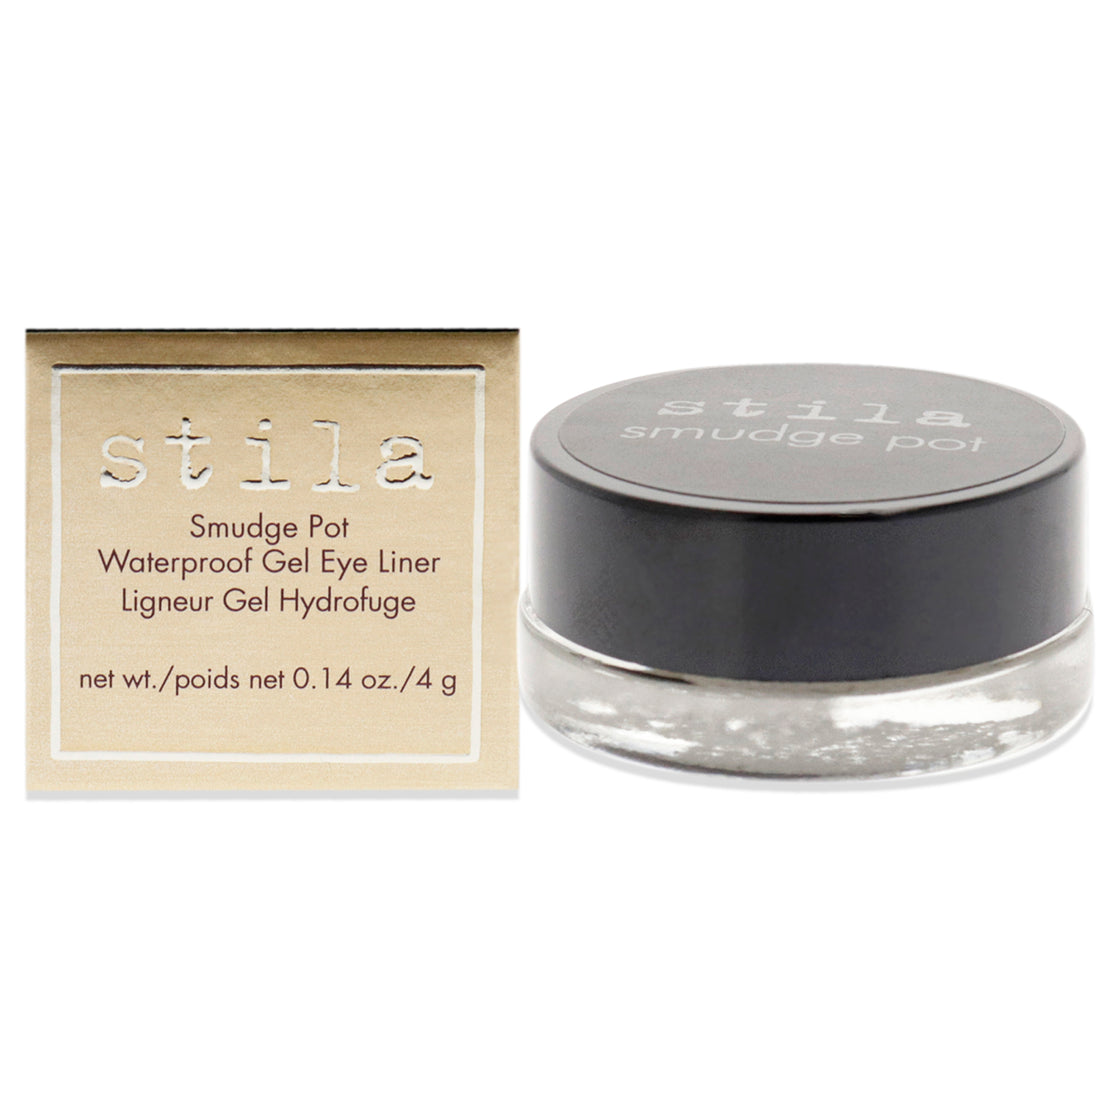 Smudge Pots Waterproof Gel Eye Liner - Black by Stila for Women - 0.14 oz Eyeliner